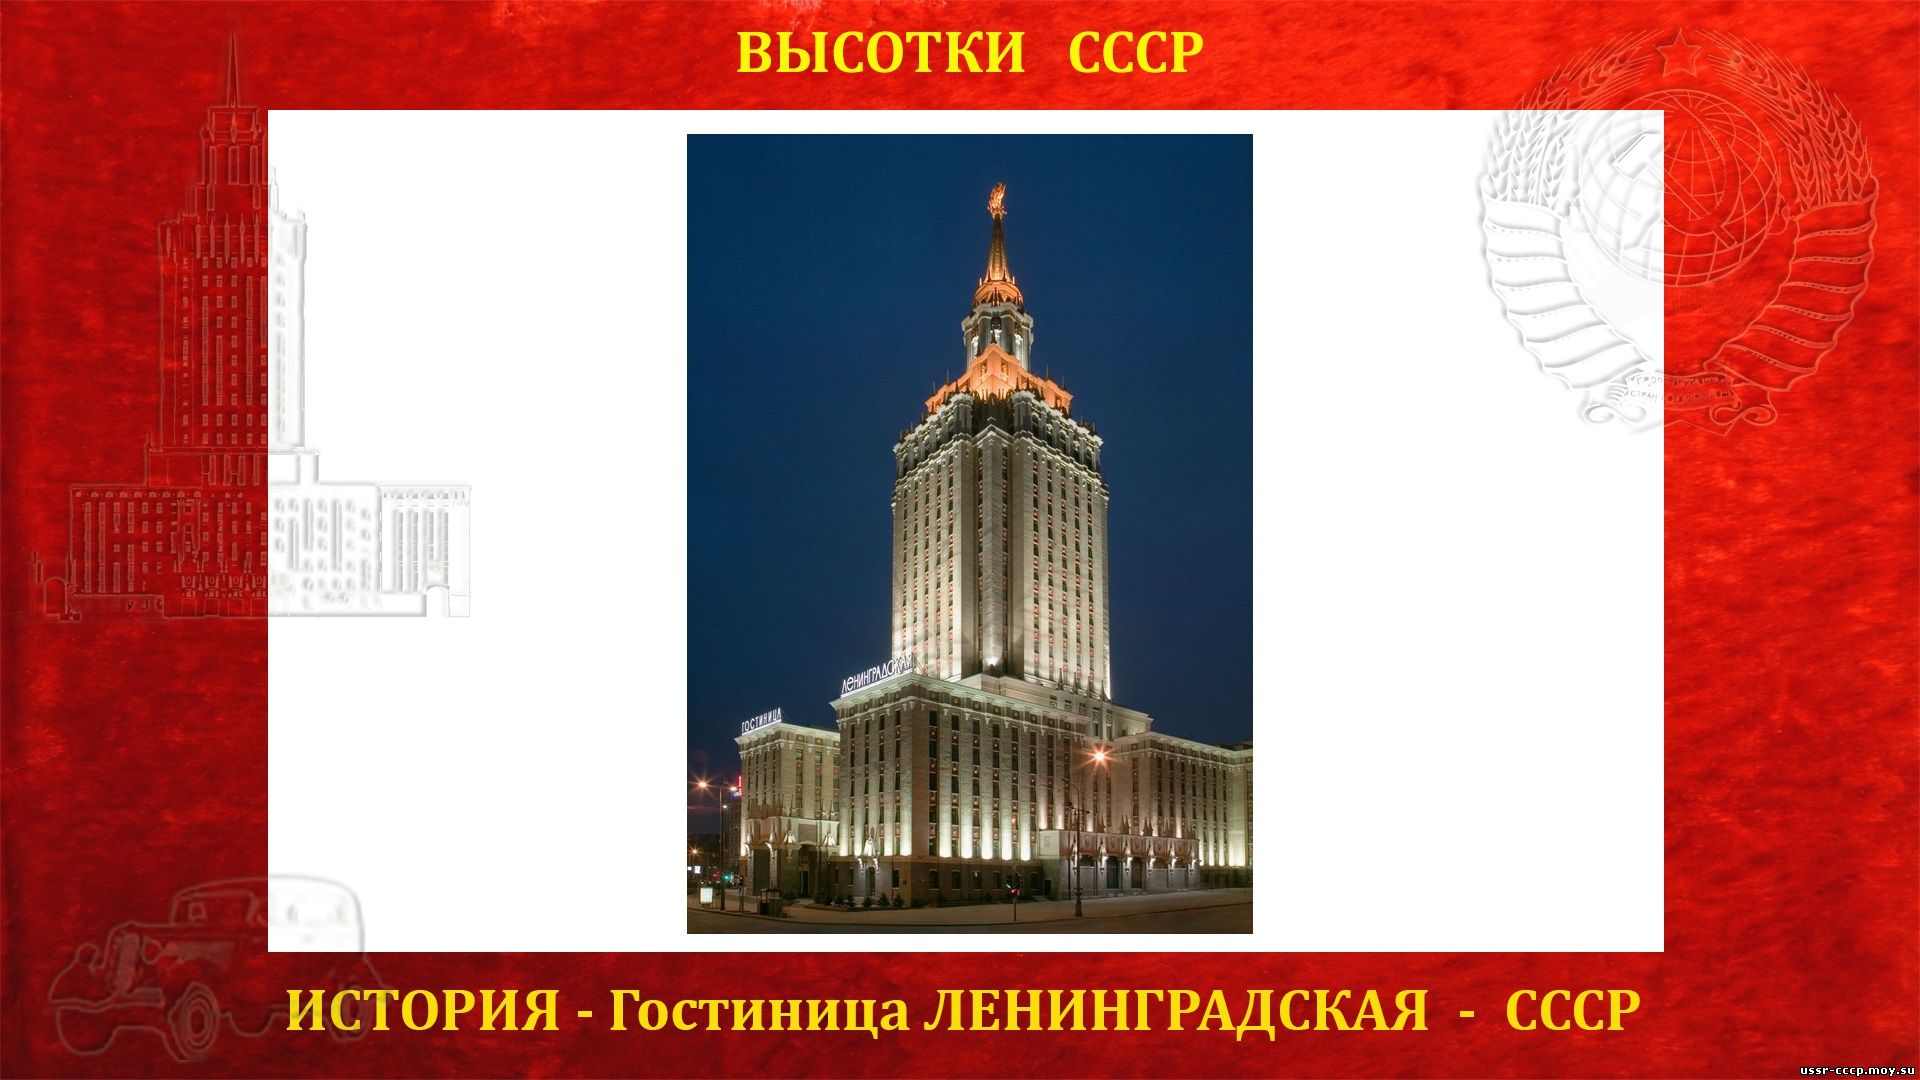 Гостиница Ленинградская (Москва) (повествование)